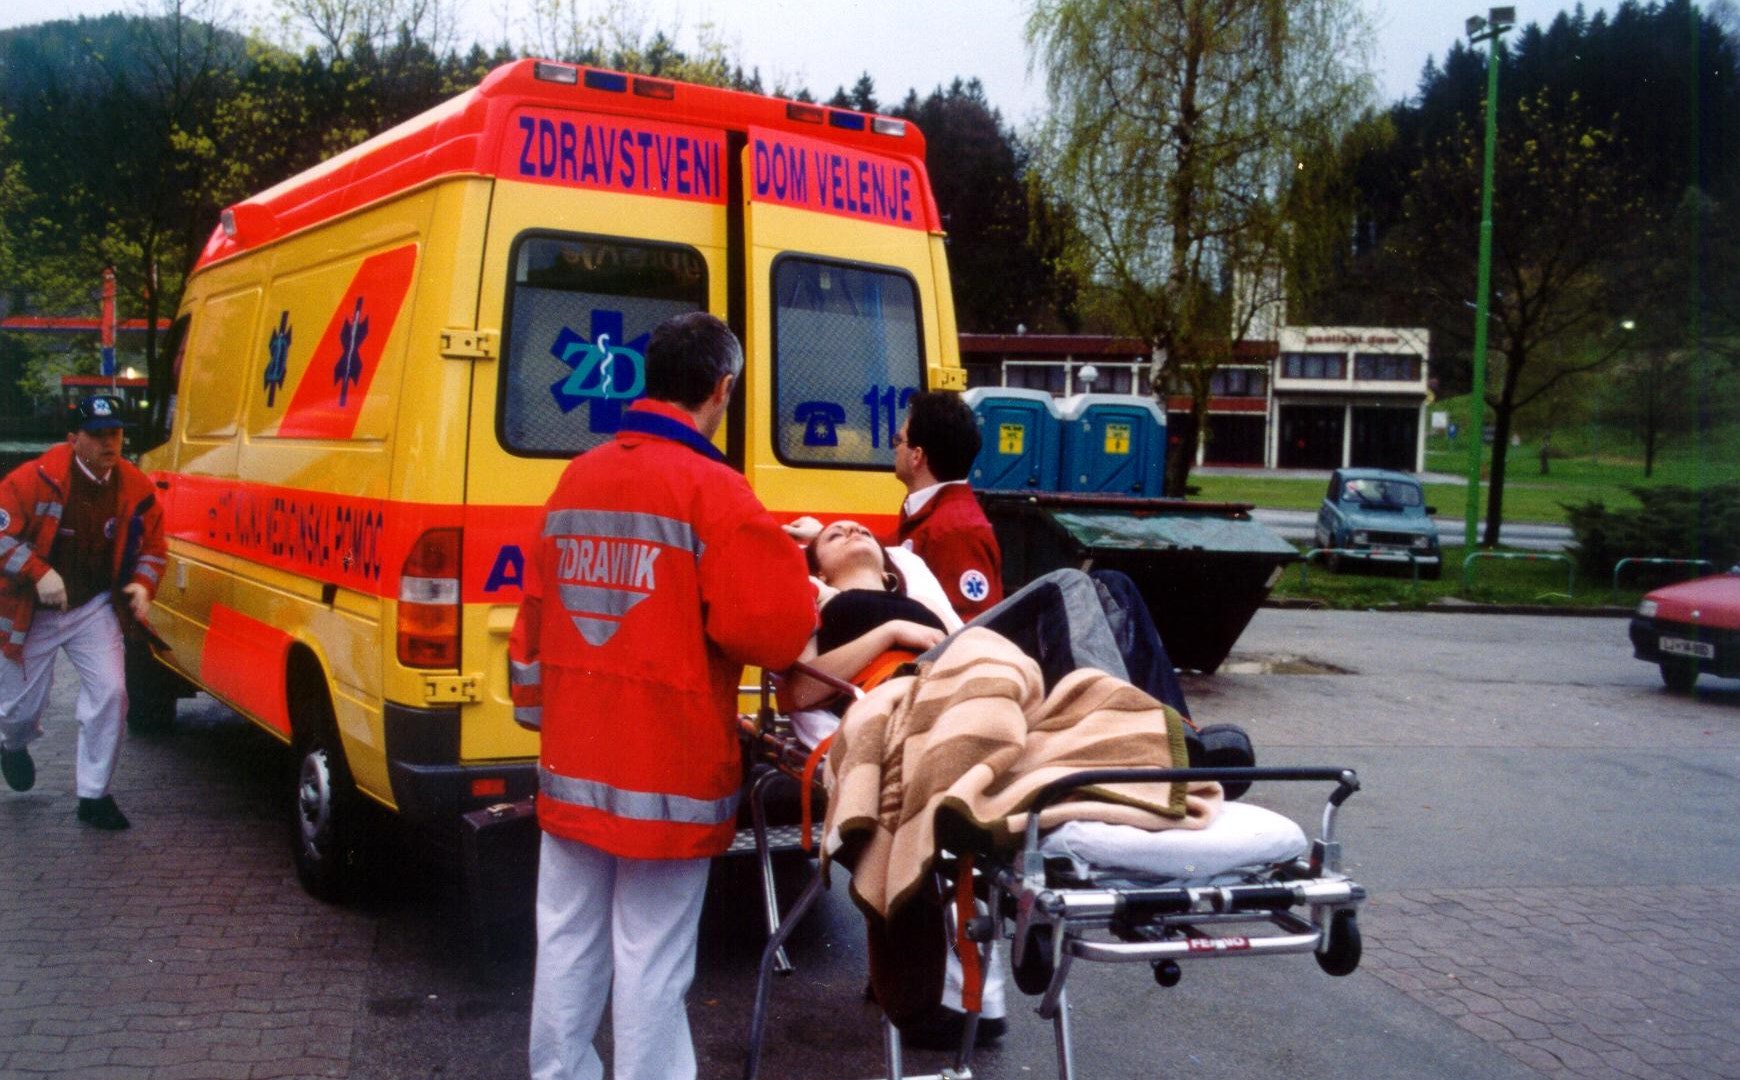 Občan iz Velenja umrl med vožnjo do urgence, ker ni bilo reševalnega vozila